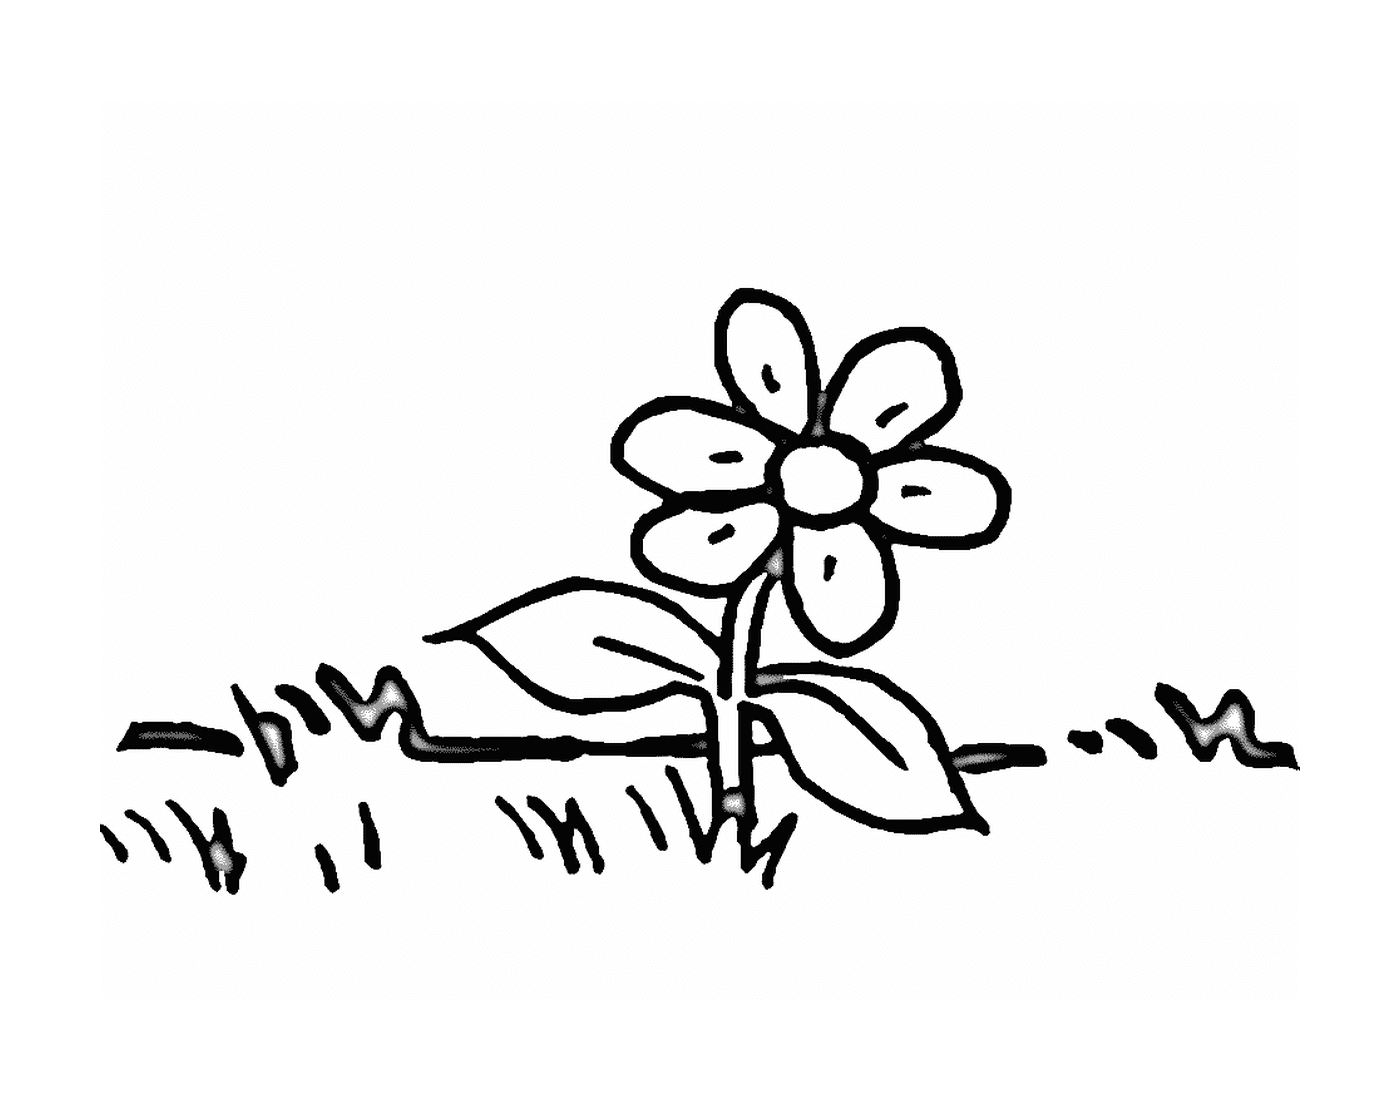  Una margherita nell'erba 